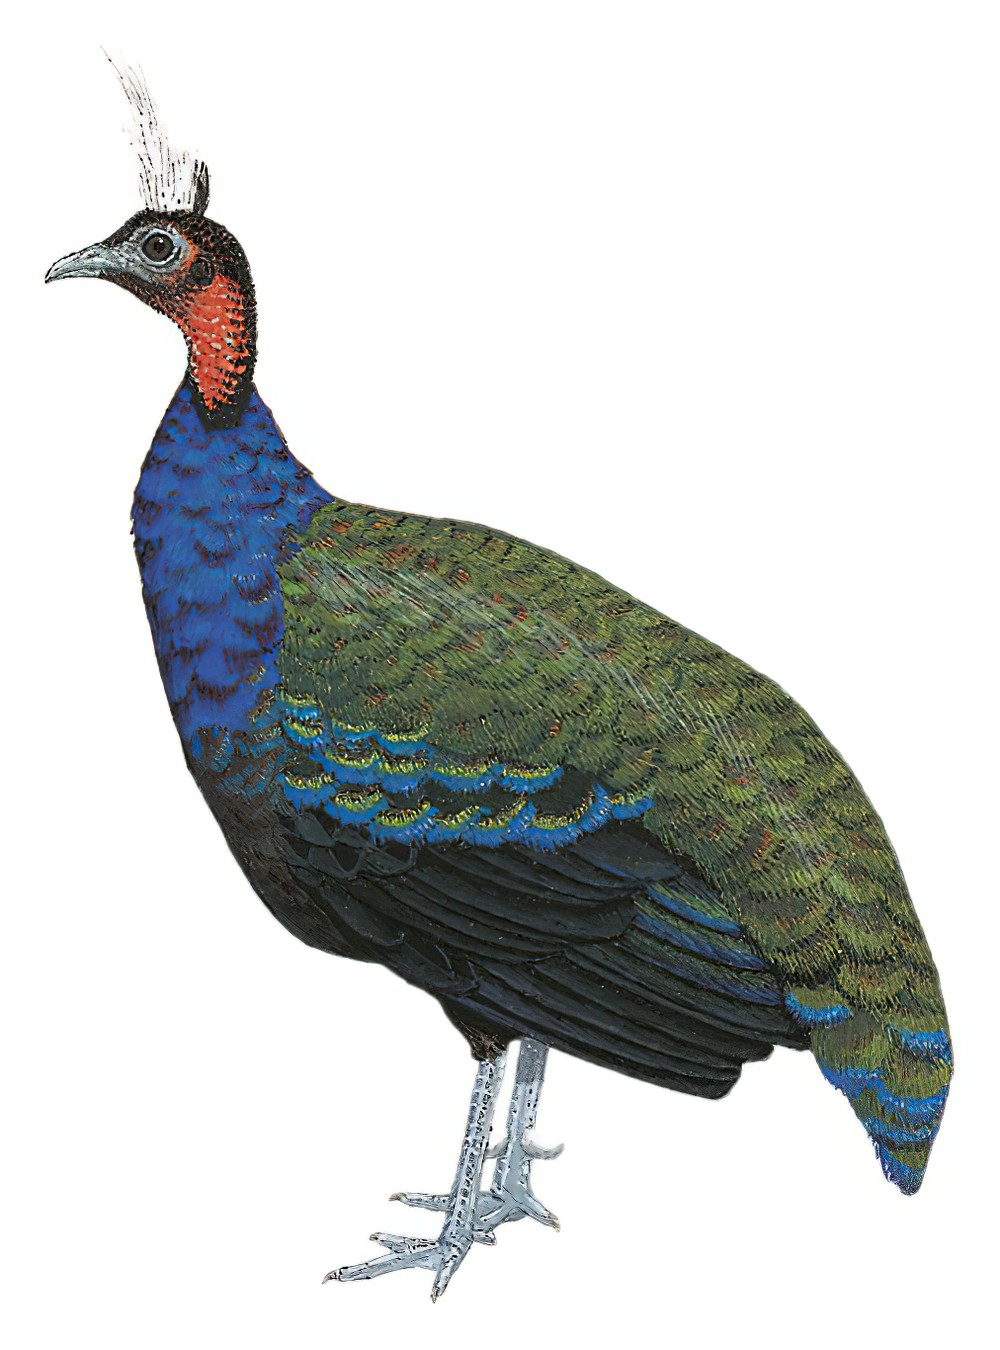 Congo Peacock / Afropavo congensis